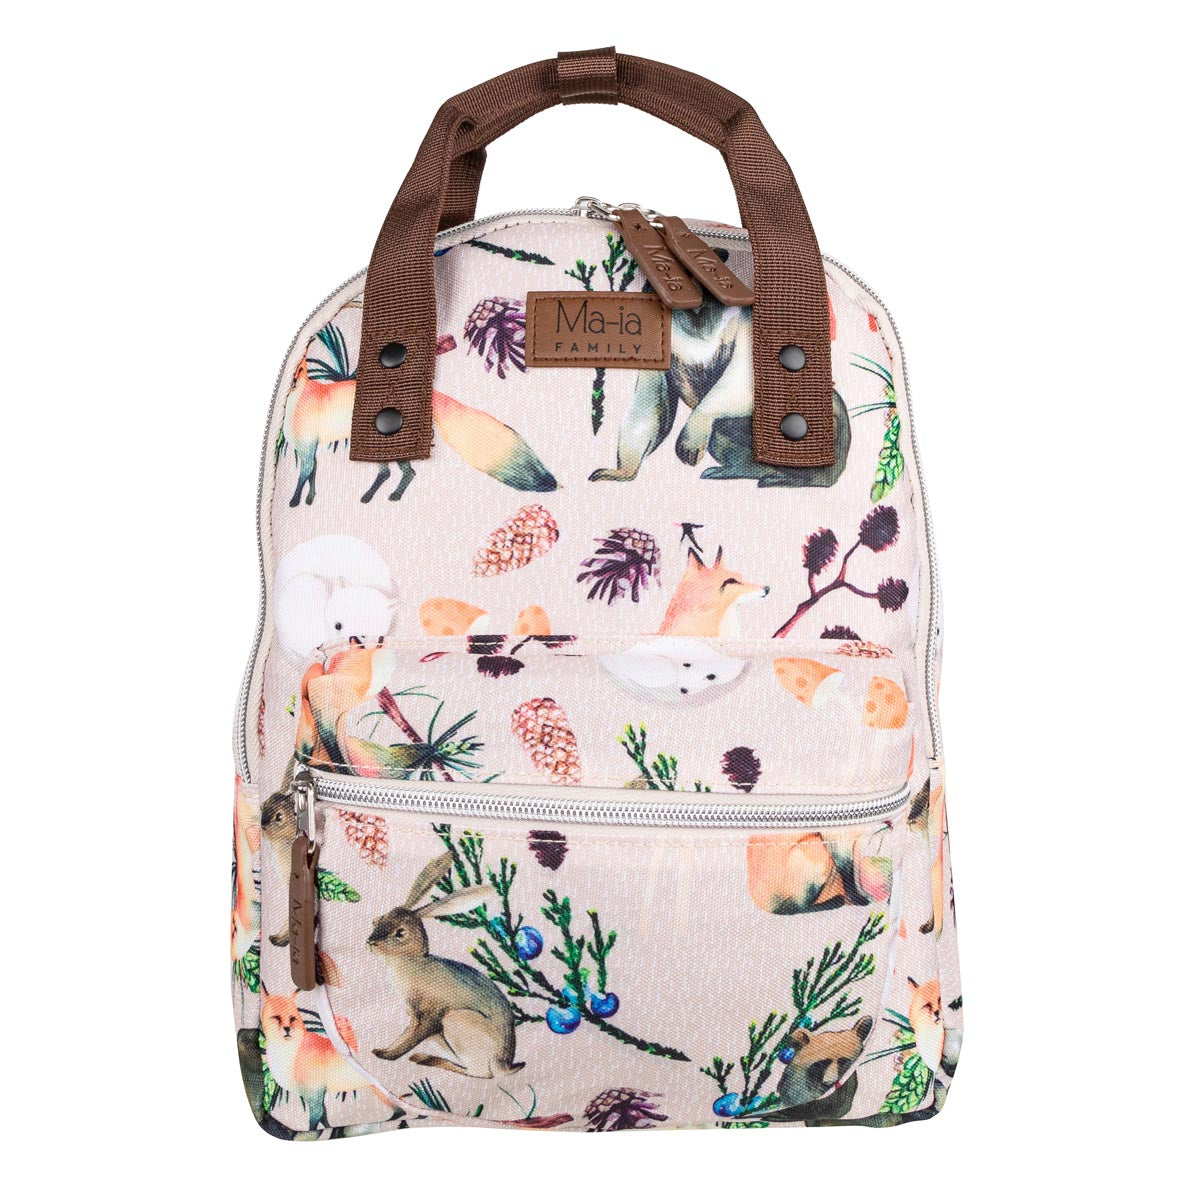 Fauna Backpack, small, beige